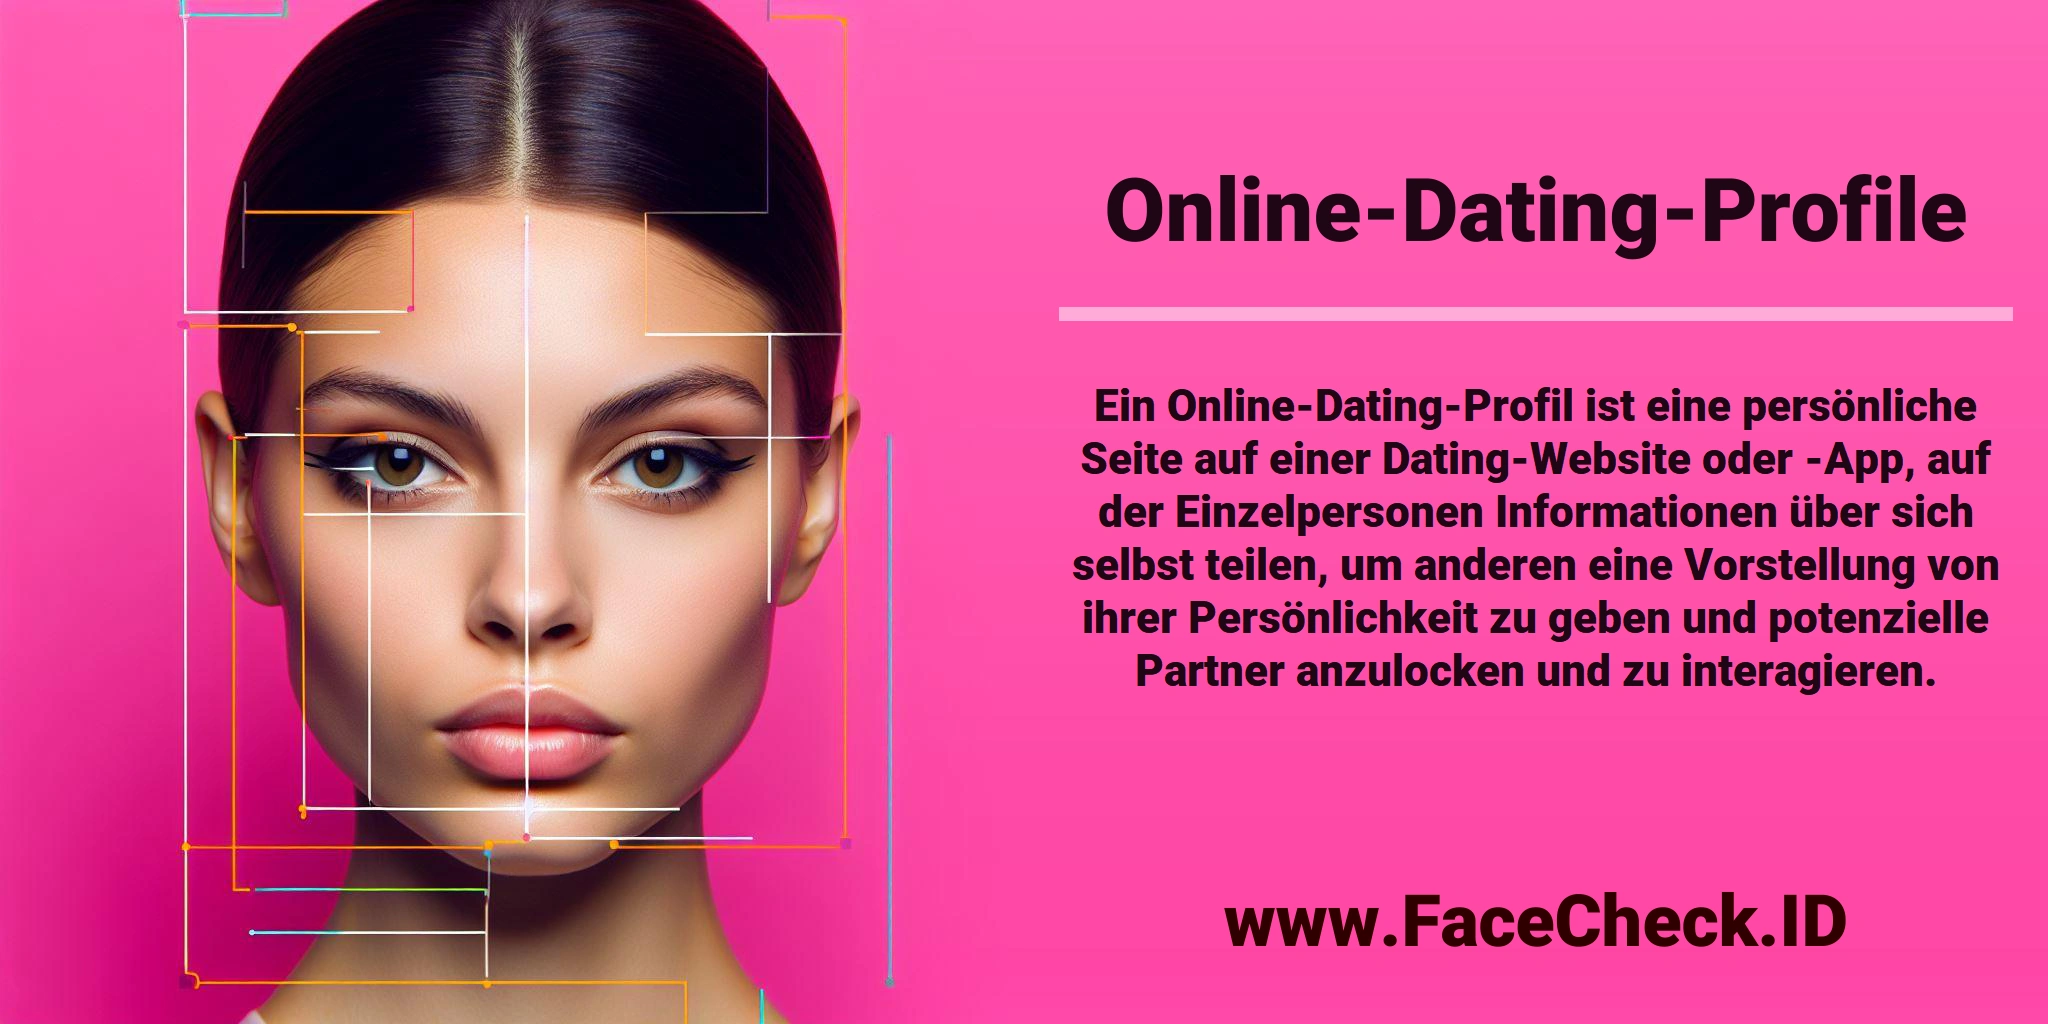 Ein Online-Dating-Profil ist eine persönliche Seite auf einer Dating-Website oder -App, auf der Einzelpersonen Informationen über sich selbst teilen, um anderen eine Vorstellung von ihrer Persönlichkeit zu geben und potenzielle Partner anzulocken und zu interagieren.